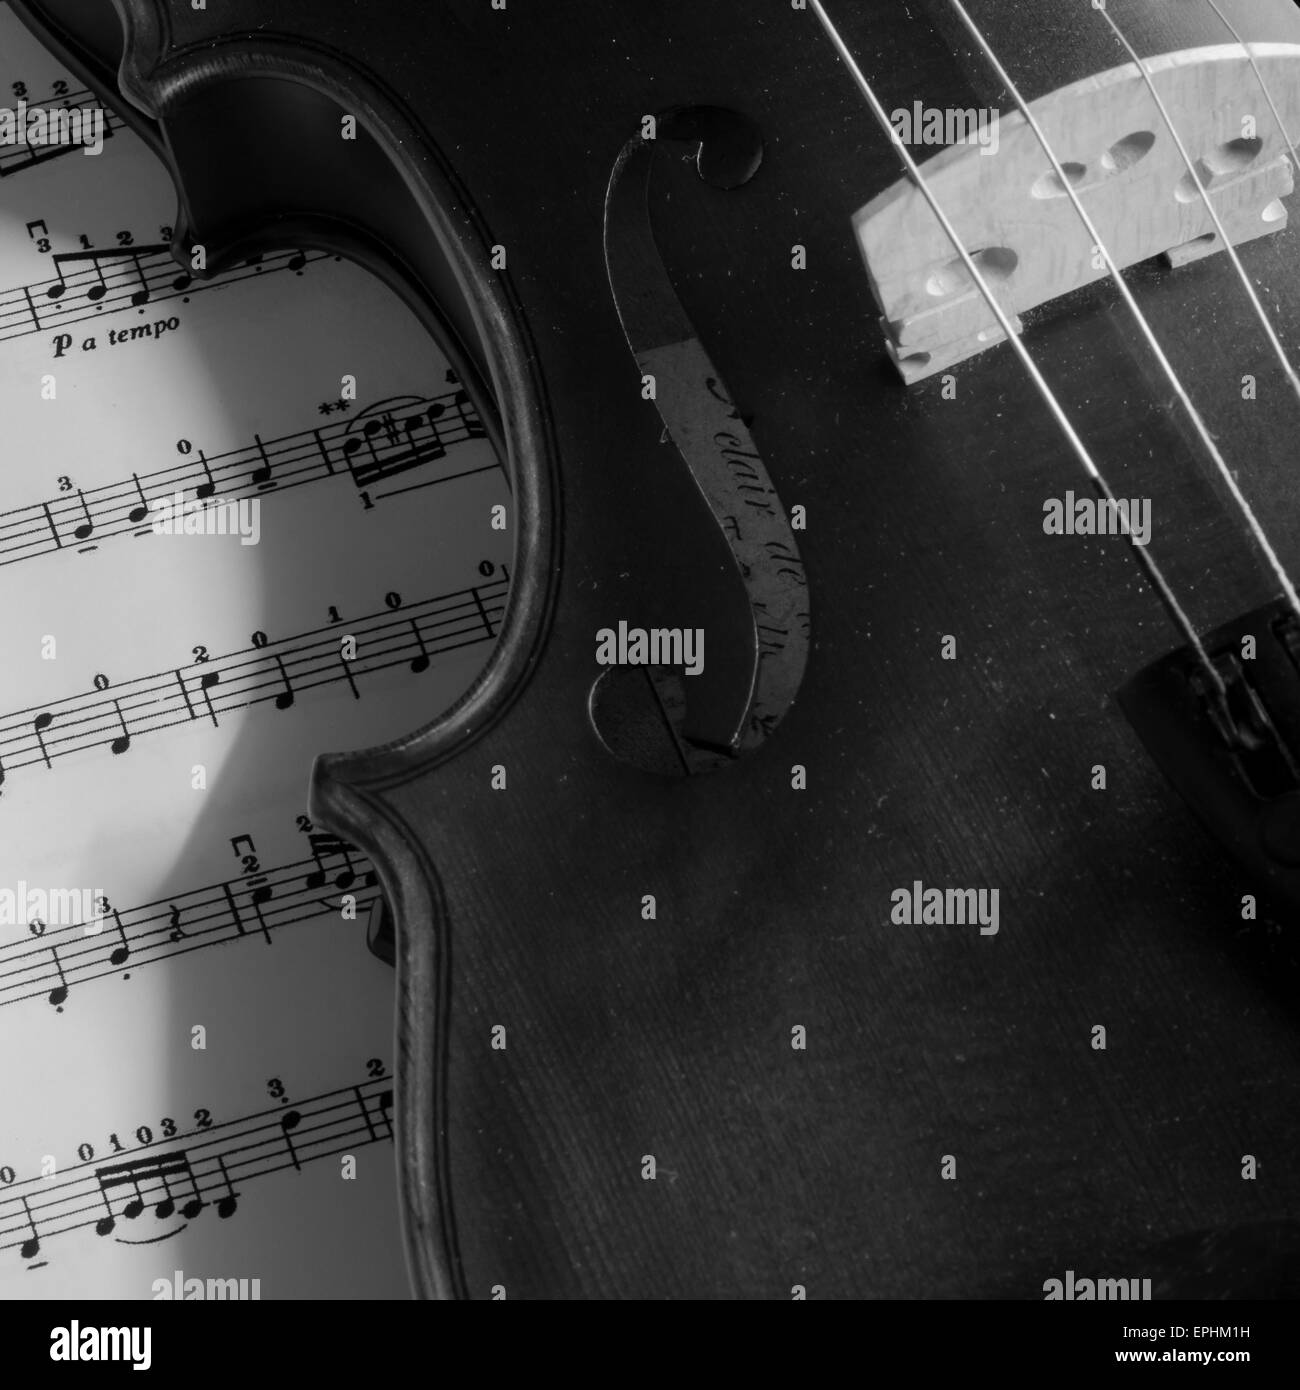 classic black and white violin Stock Photo